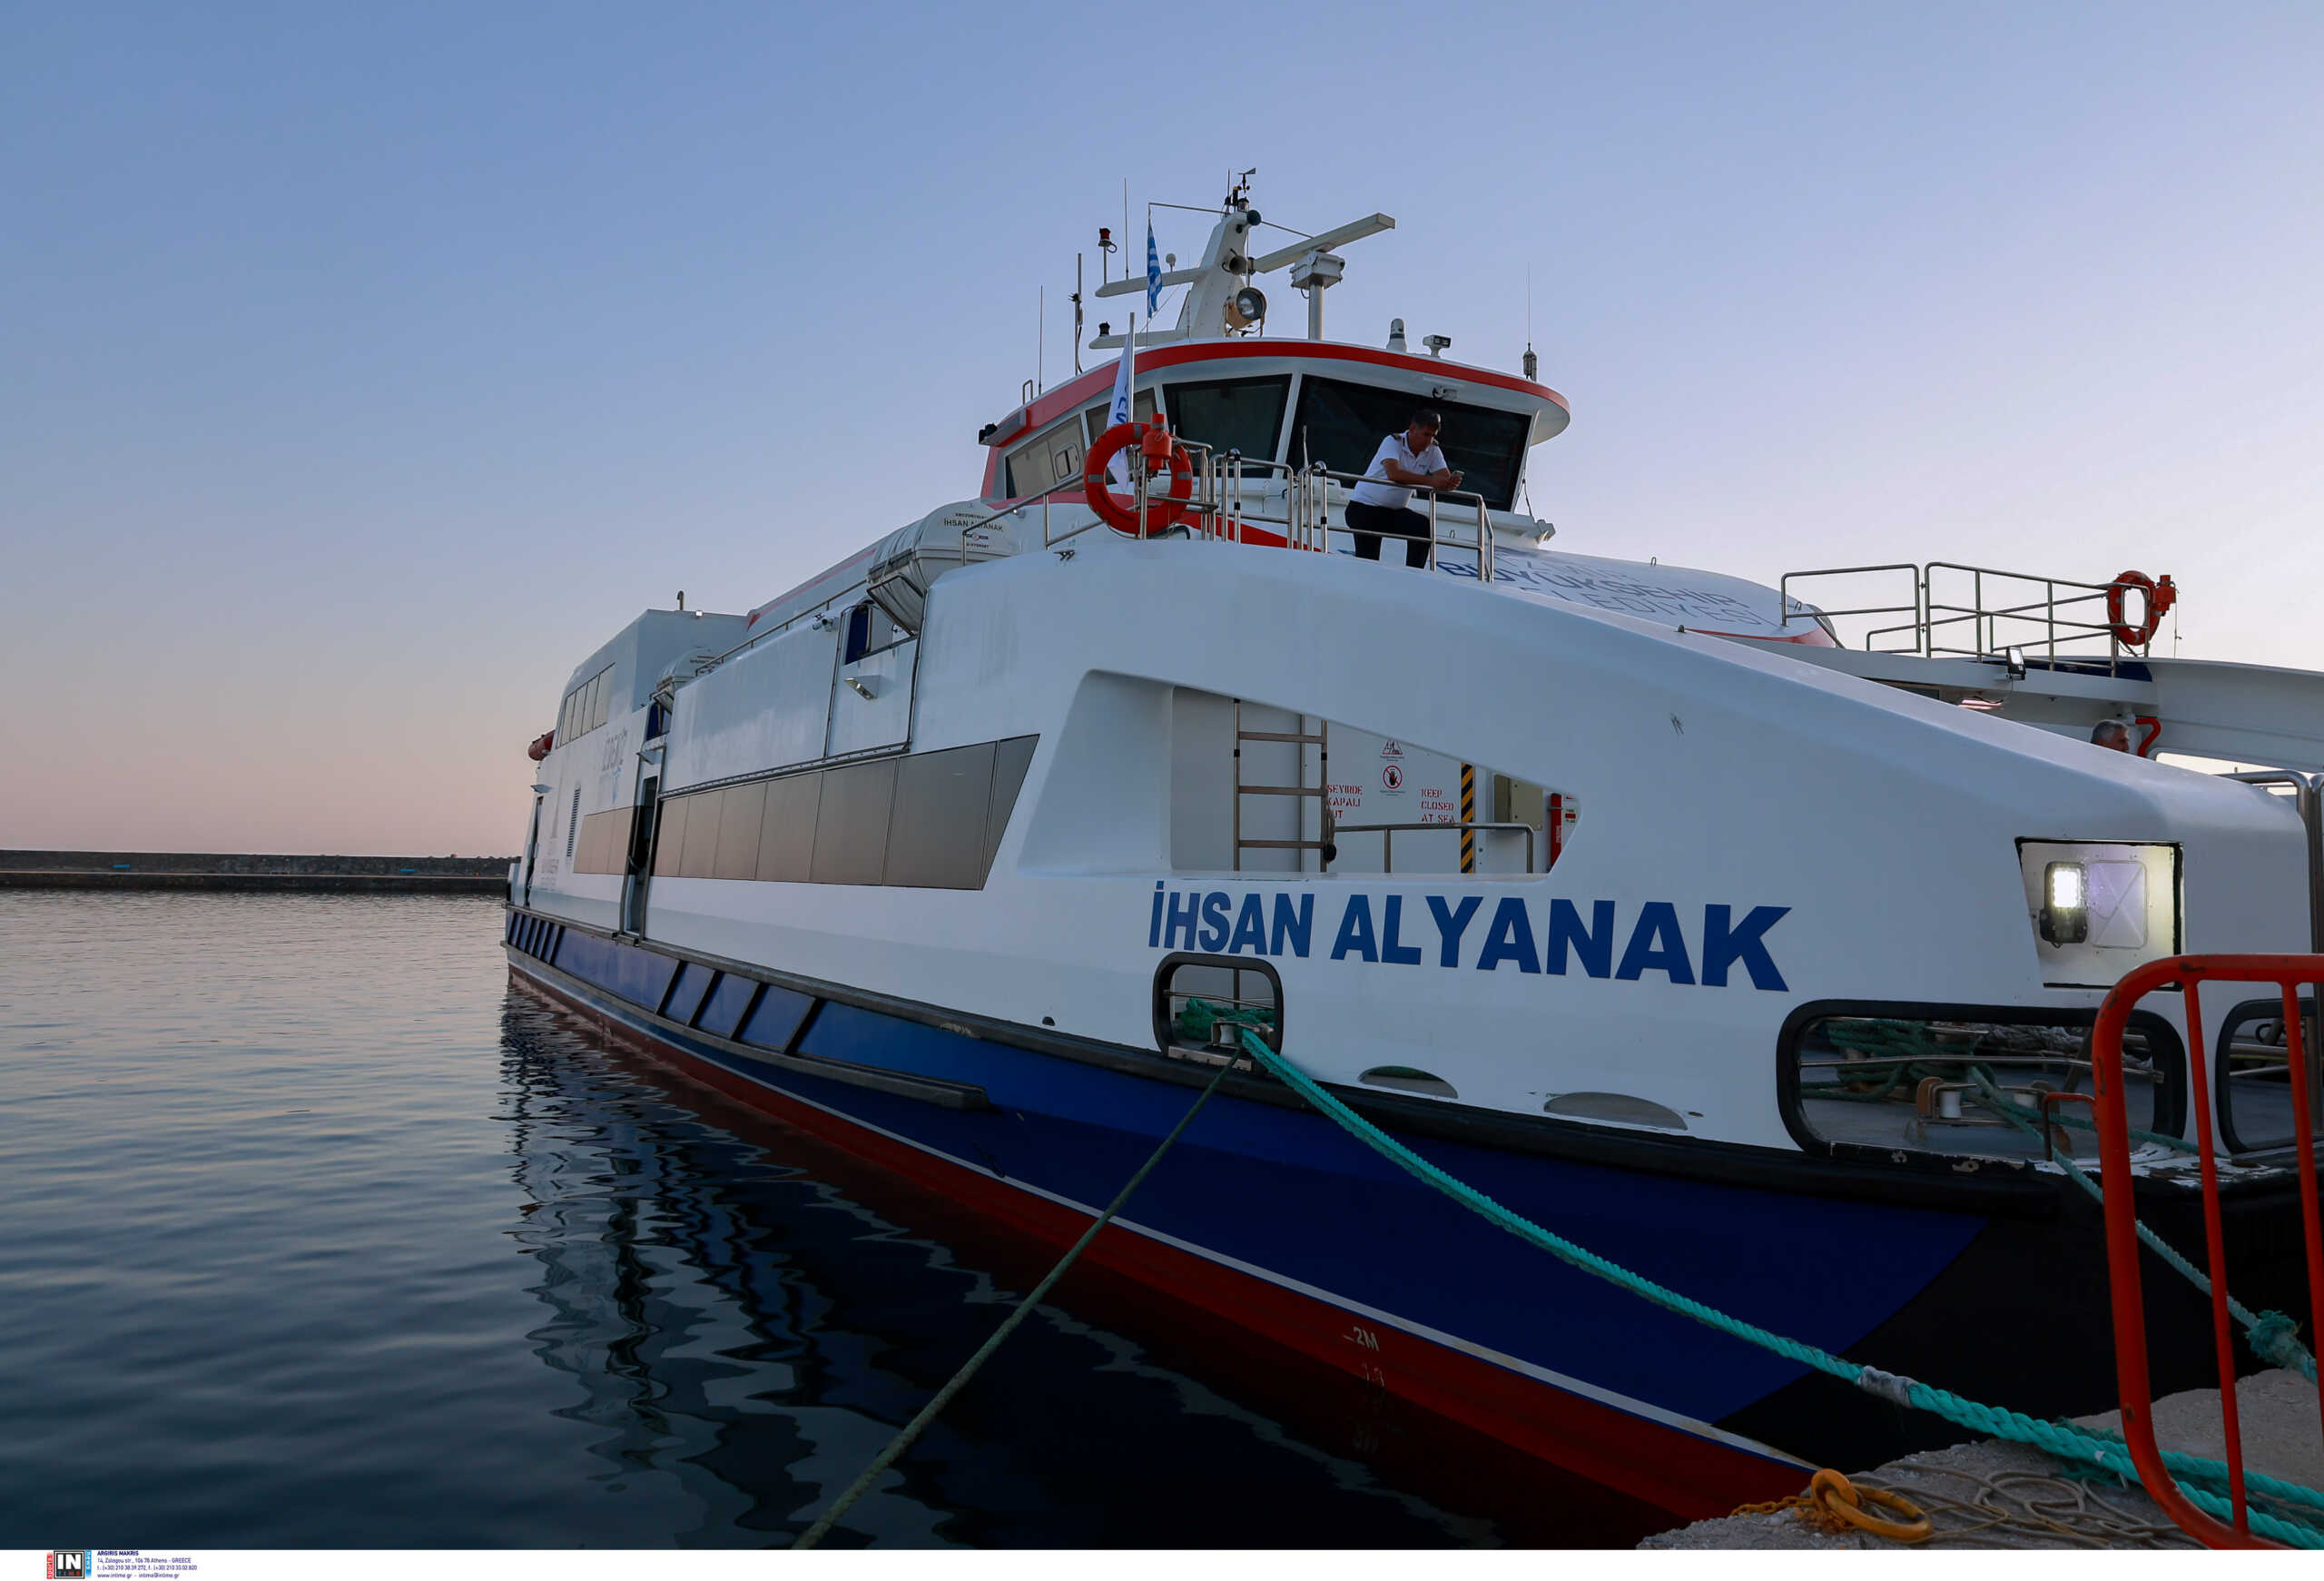 Θεσσαλονίκη: Πλοίο απευθείας για τη Σμύρνη της Τουρκίας – Η ανακαίνιση και ο στόχος για τα δρομολόγια